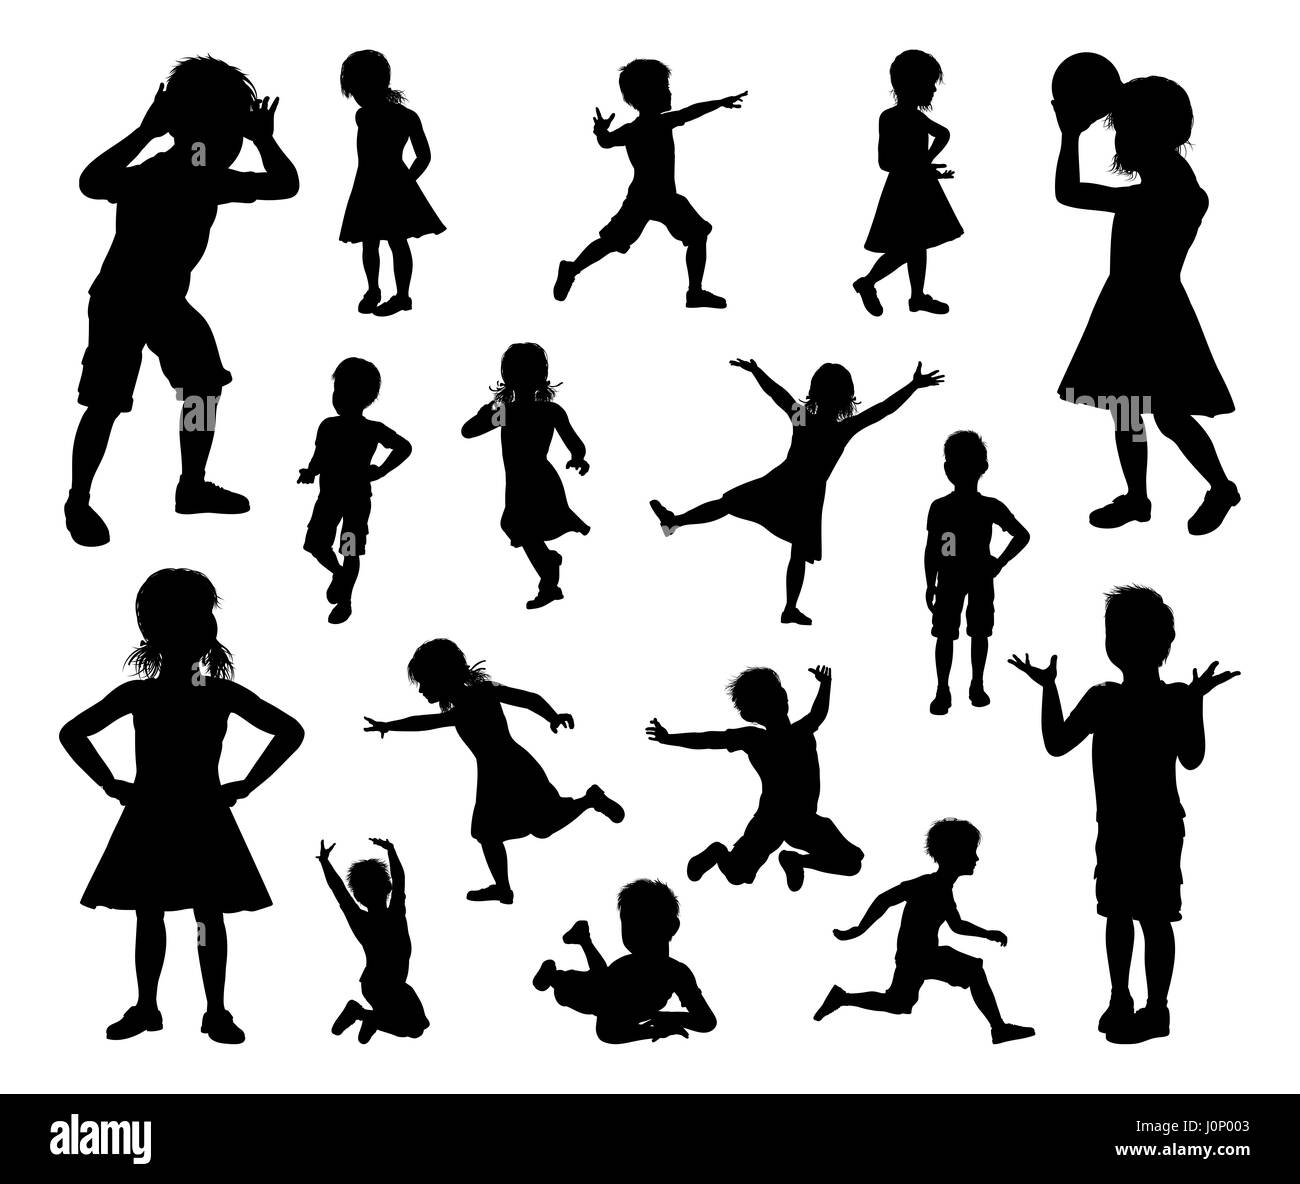 Un ensemble d'enfants ou d'enfants en silhouette jouer, courir et sauter et à d'autres pose Banque D'Images